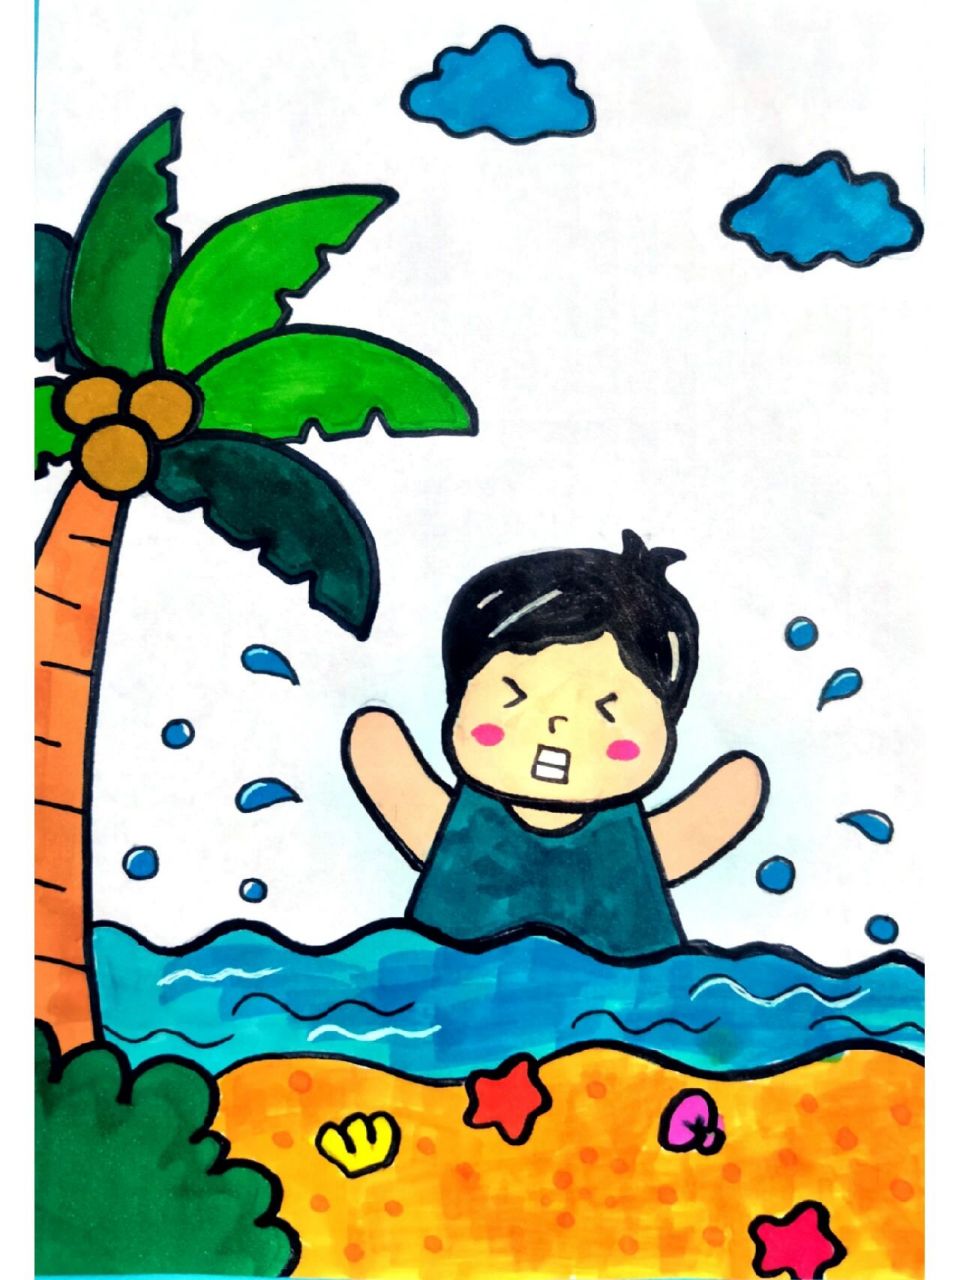 夏季防溺水儿童简笔画 夏季防溺水儿童简笔画,假期一定提醒孩子远离